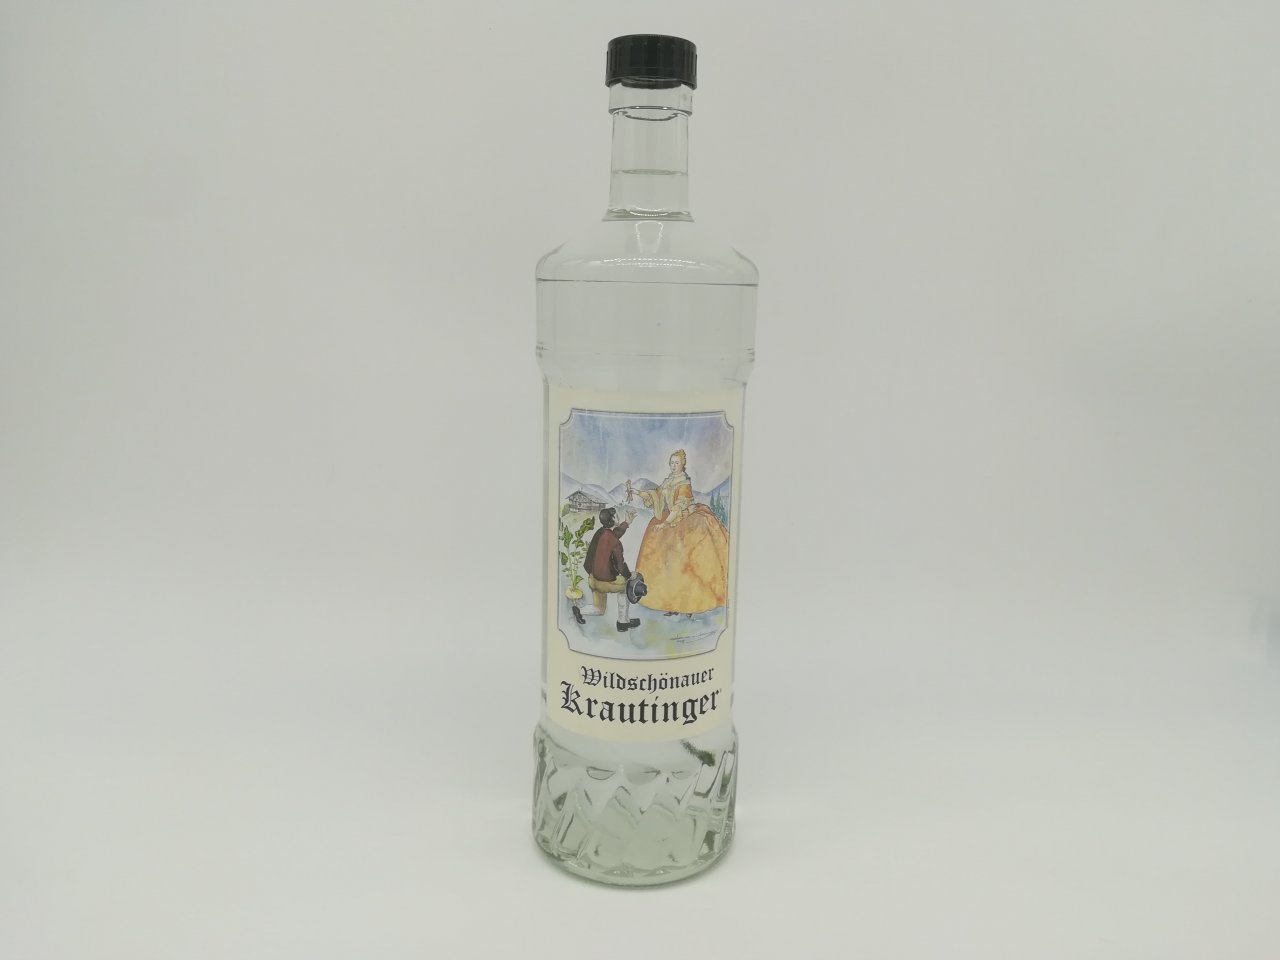 Wildschönauer Krautinger 43% Alkohol 1 Liter